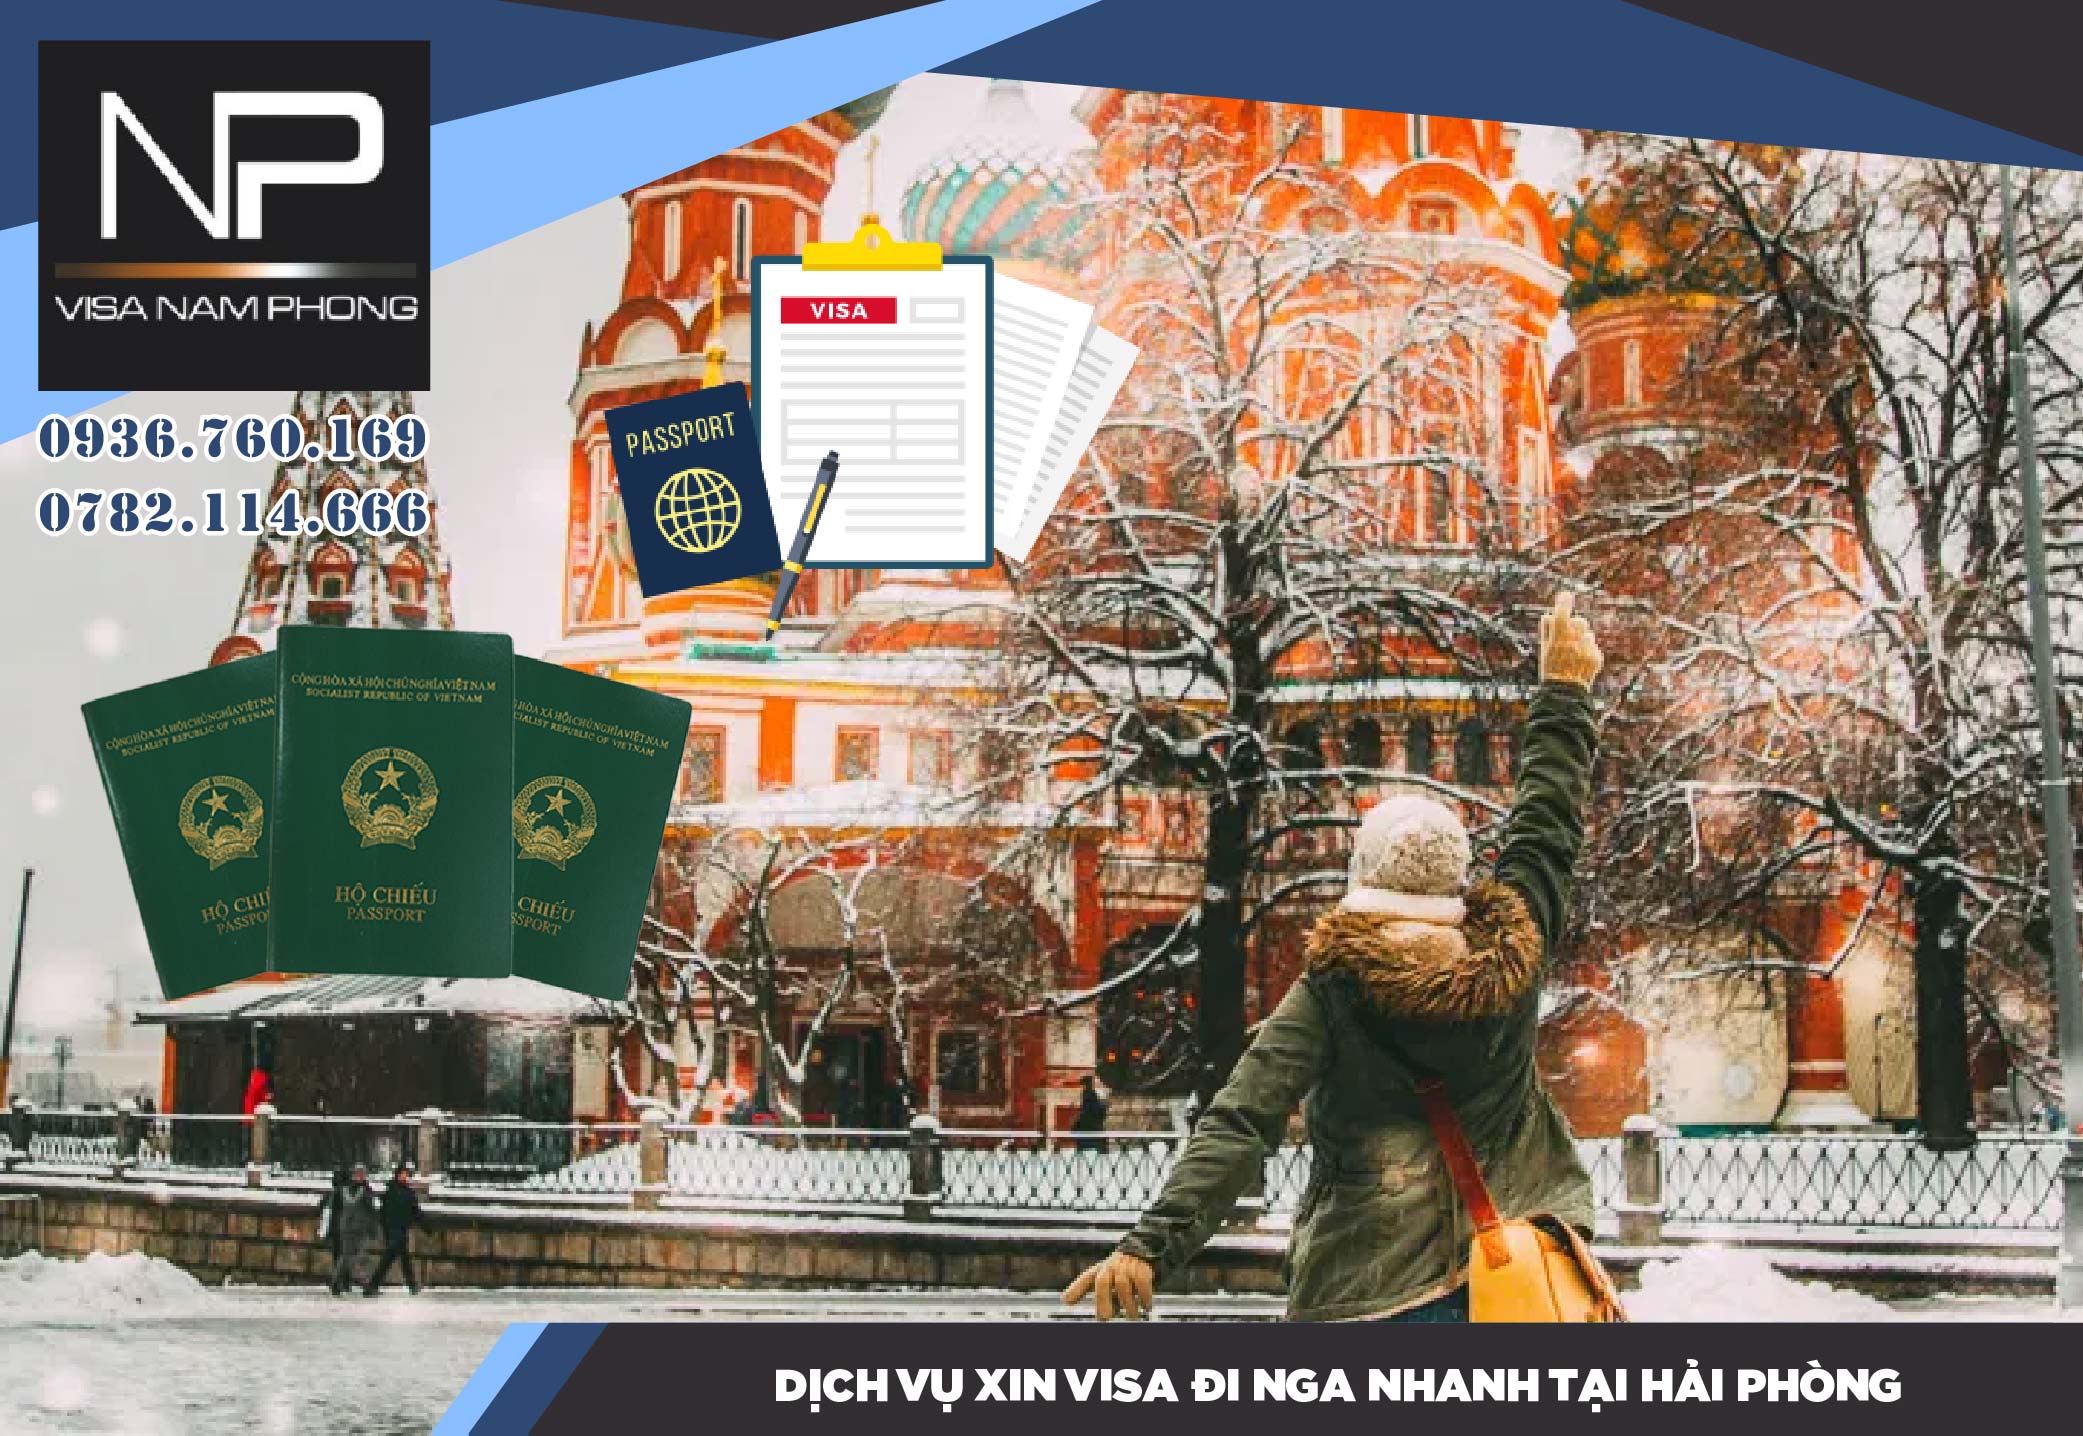 DỊch vụ xin visa đi Nga nhanh tại Hải Phòng